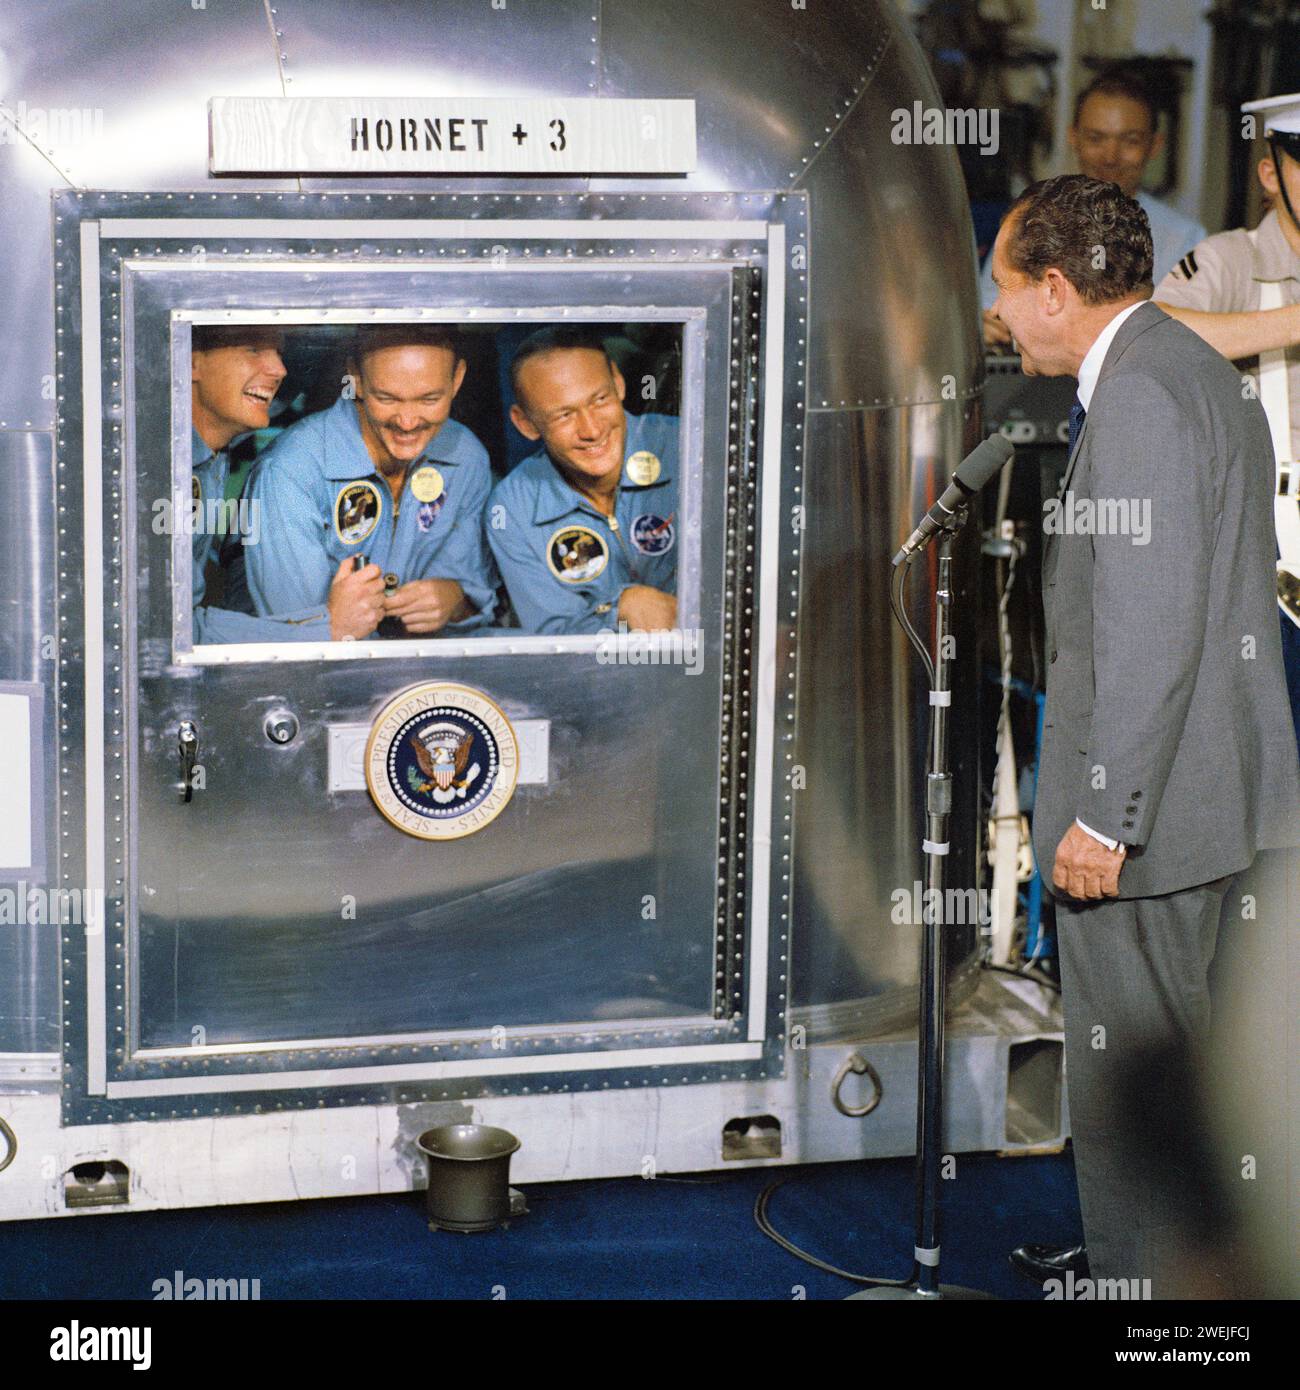 Il presidente degli Stati Uniti Richard Nixon saluta gli astronauti dell'Apollo 11 Neil A. Armstrong, Edwin E. Aldrin e Michael Collins, all'interno della struttura di quarantena dopo il successo della missione di recupero, USS Hornet, NASA, 24 luglio 1969 Foto Stock